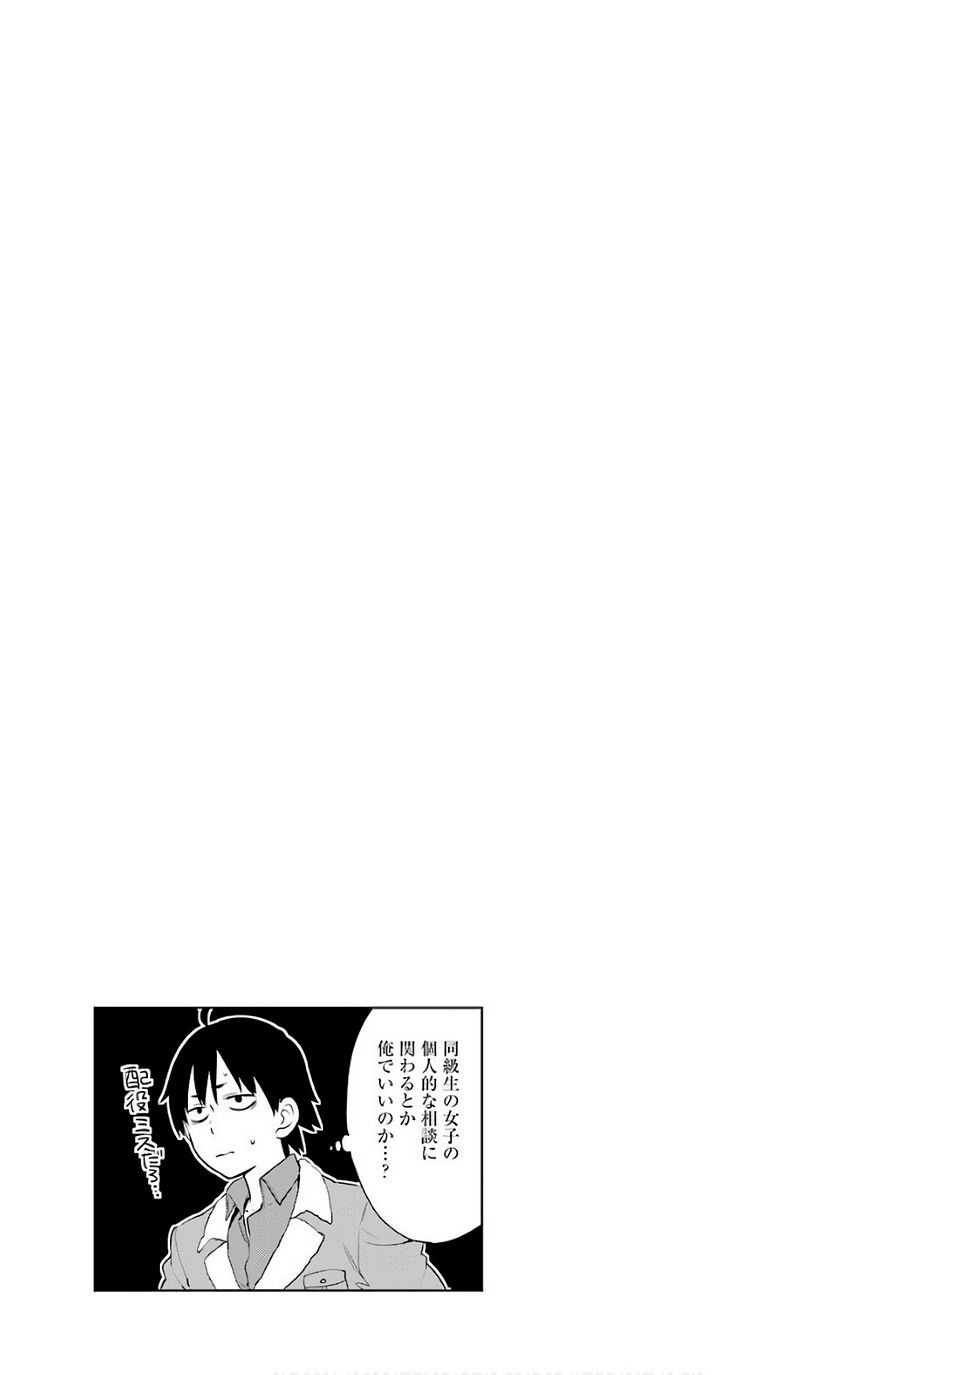 Yahari Ore no Seishun Rabukome wa Machigatte Iru. - Monologue - Chapter 60 - Page 42